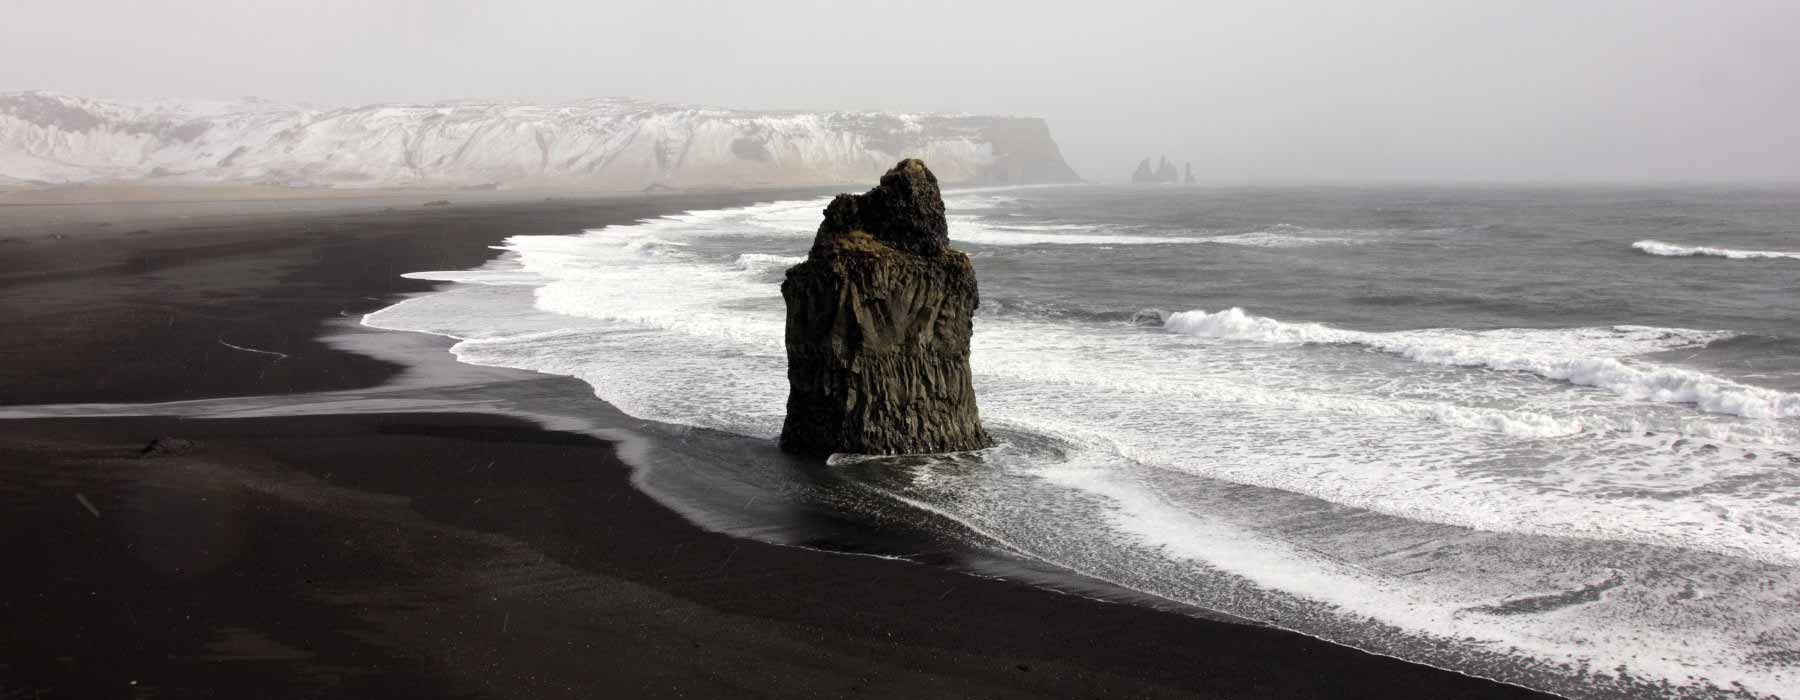 Iceland<br class="hidden-md hidden-lg" /> Summer Holidays